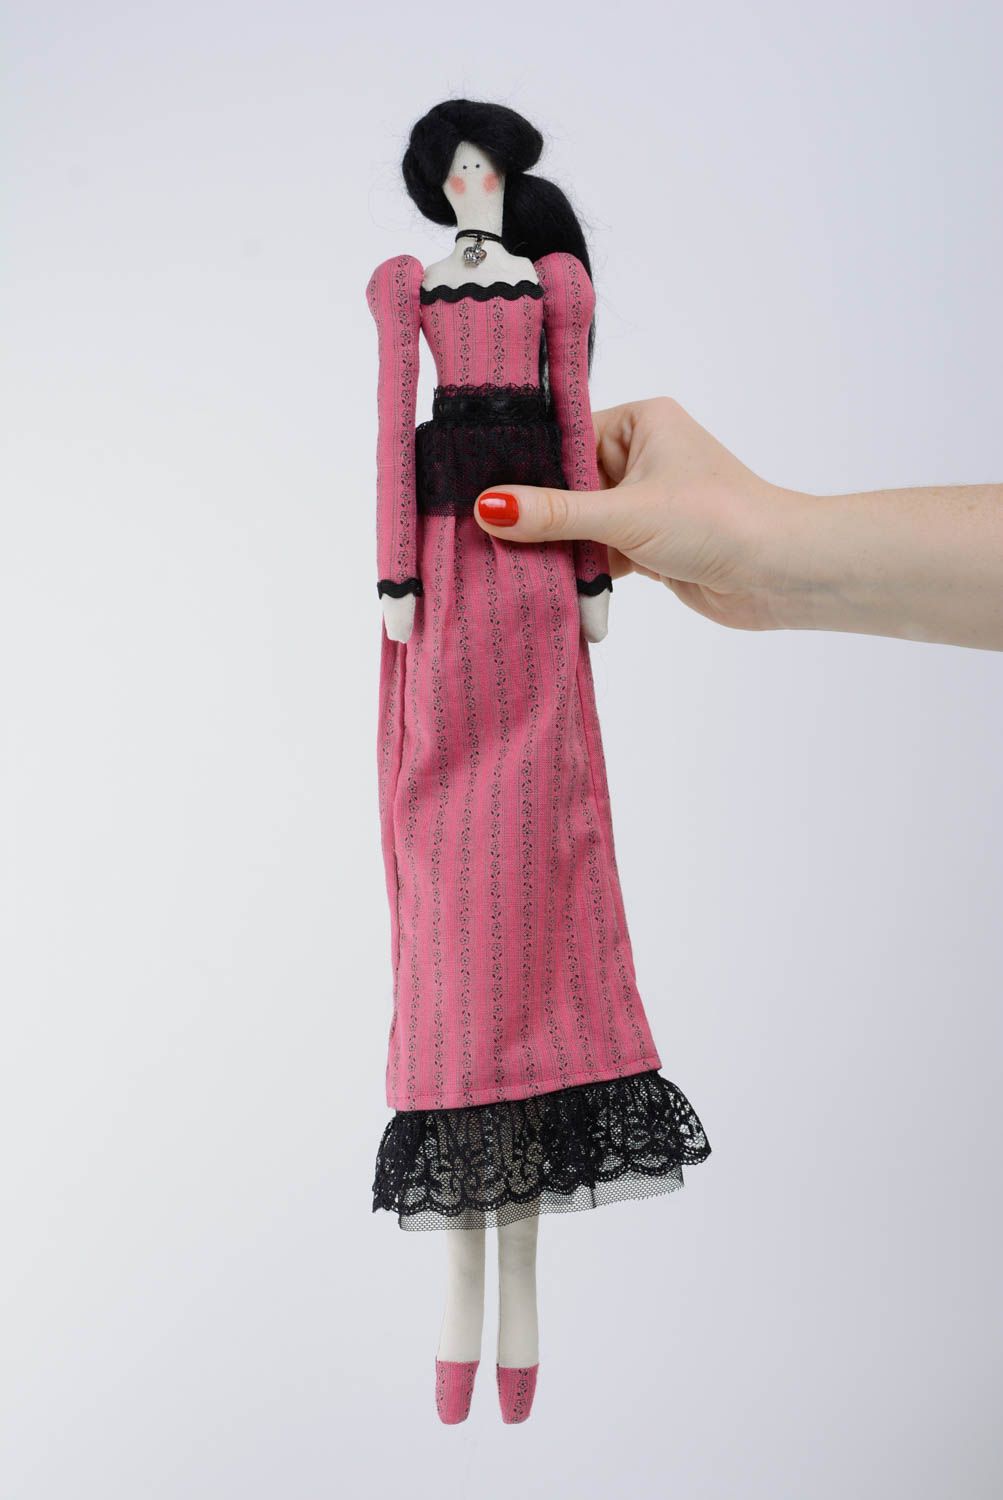 Игрушка кукла из ткани с черными волосами небольшая в розовом платье хэнд мейд фото 5